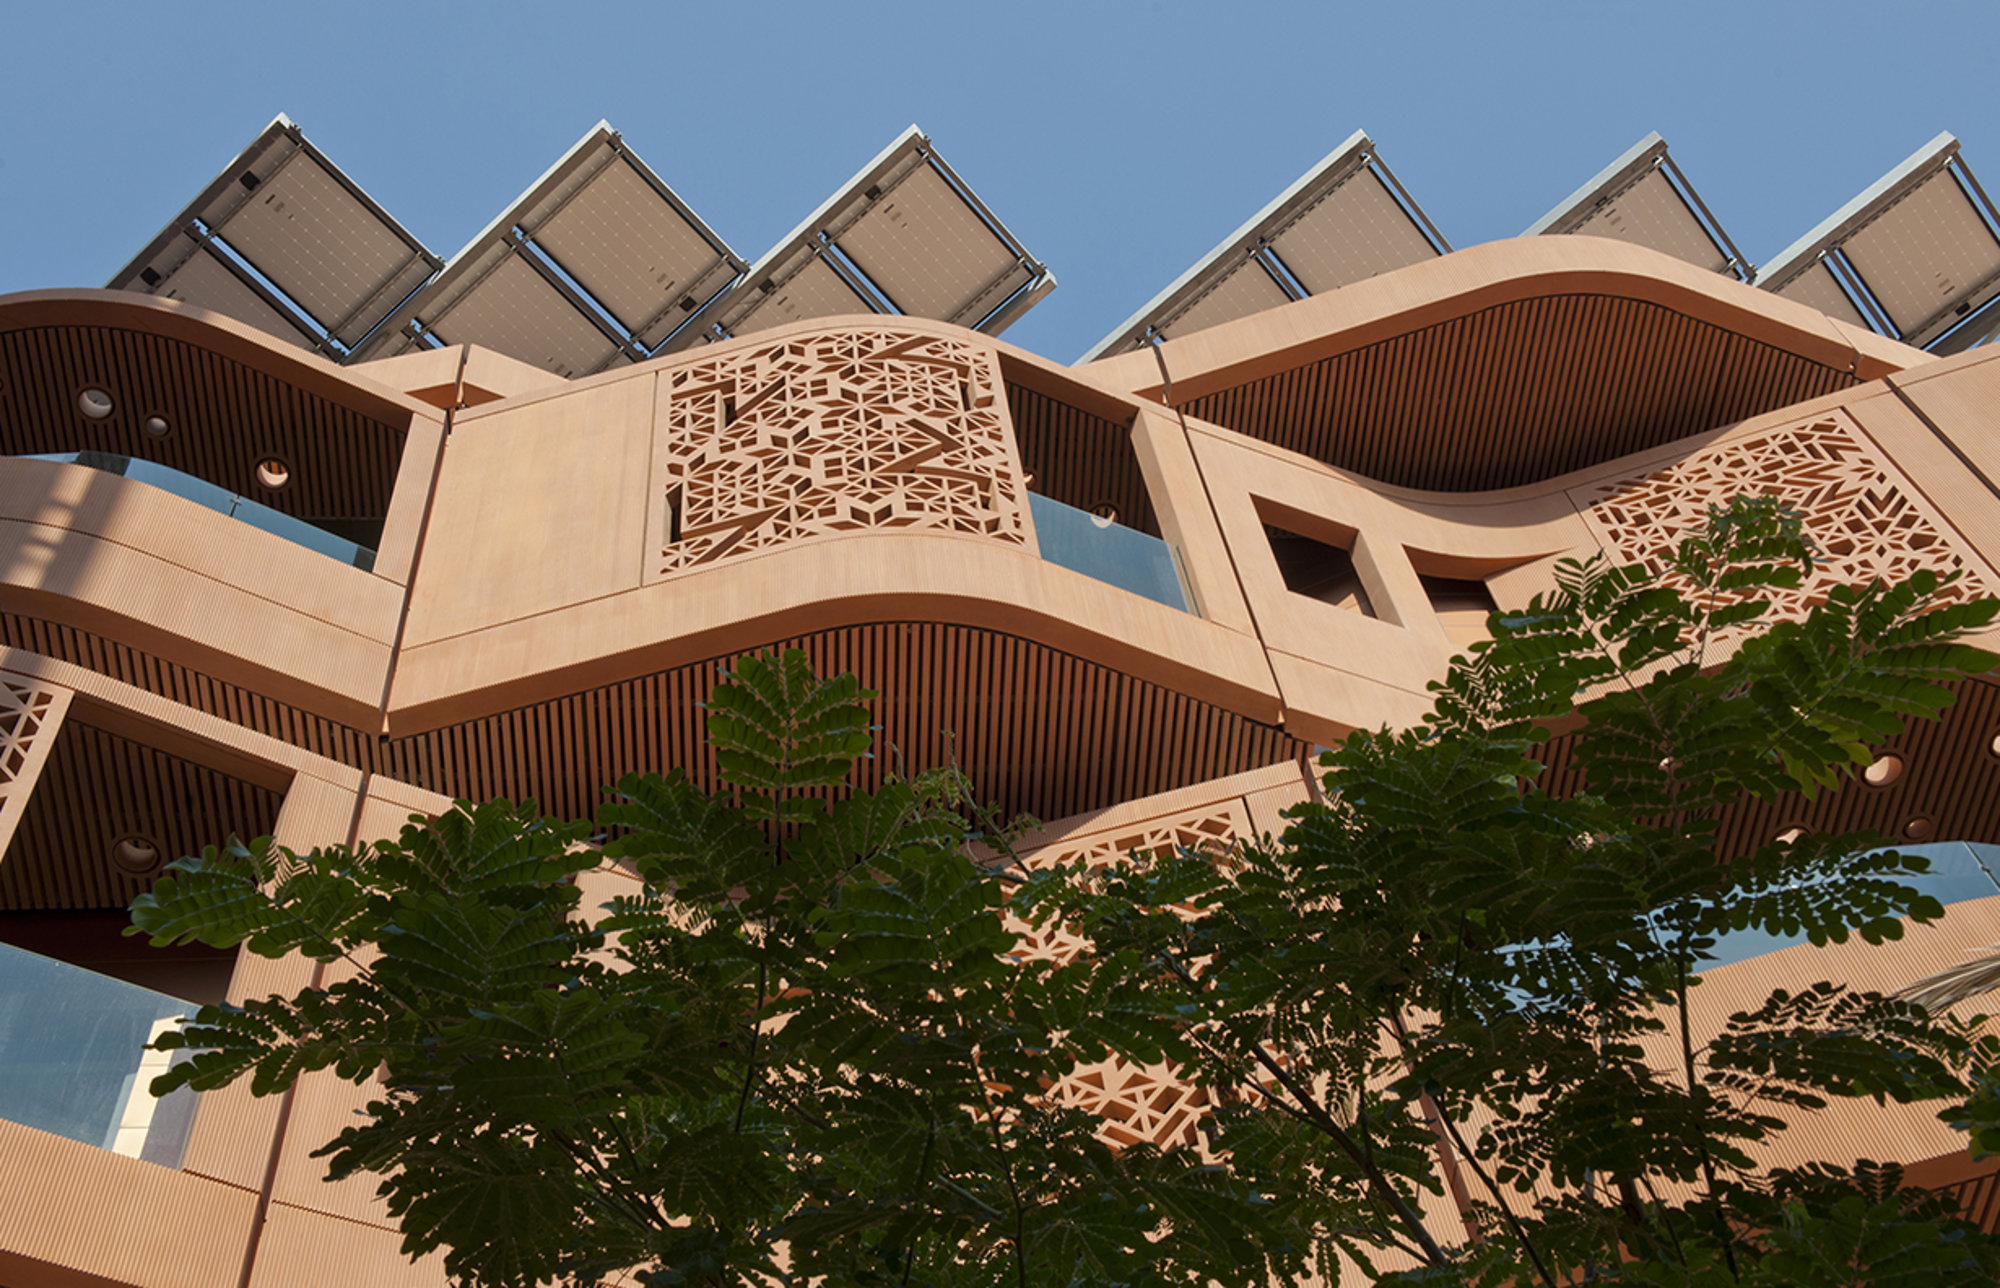 Masdar Institute